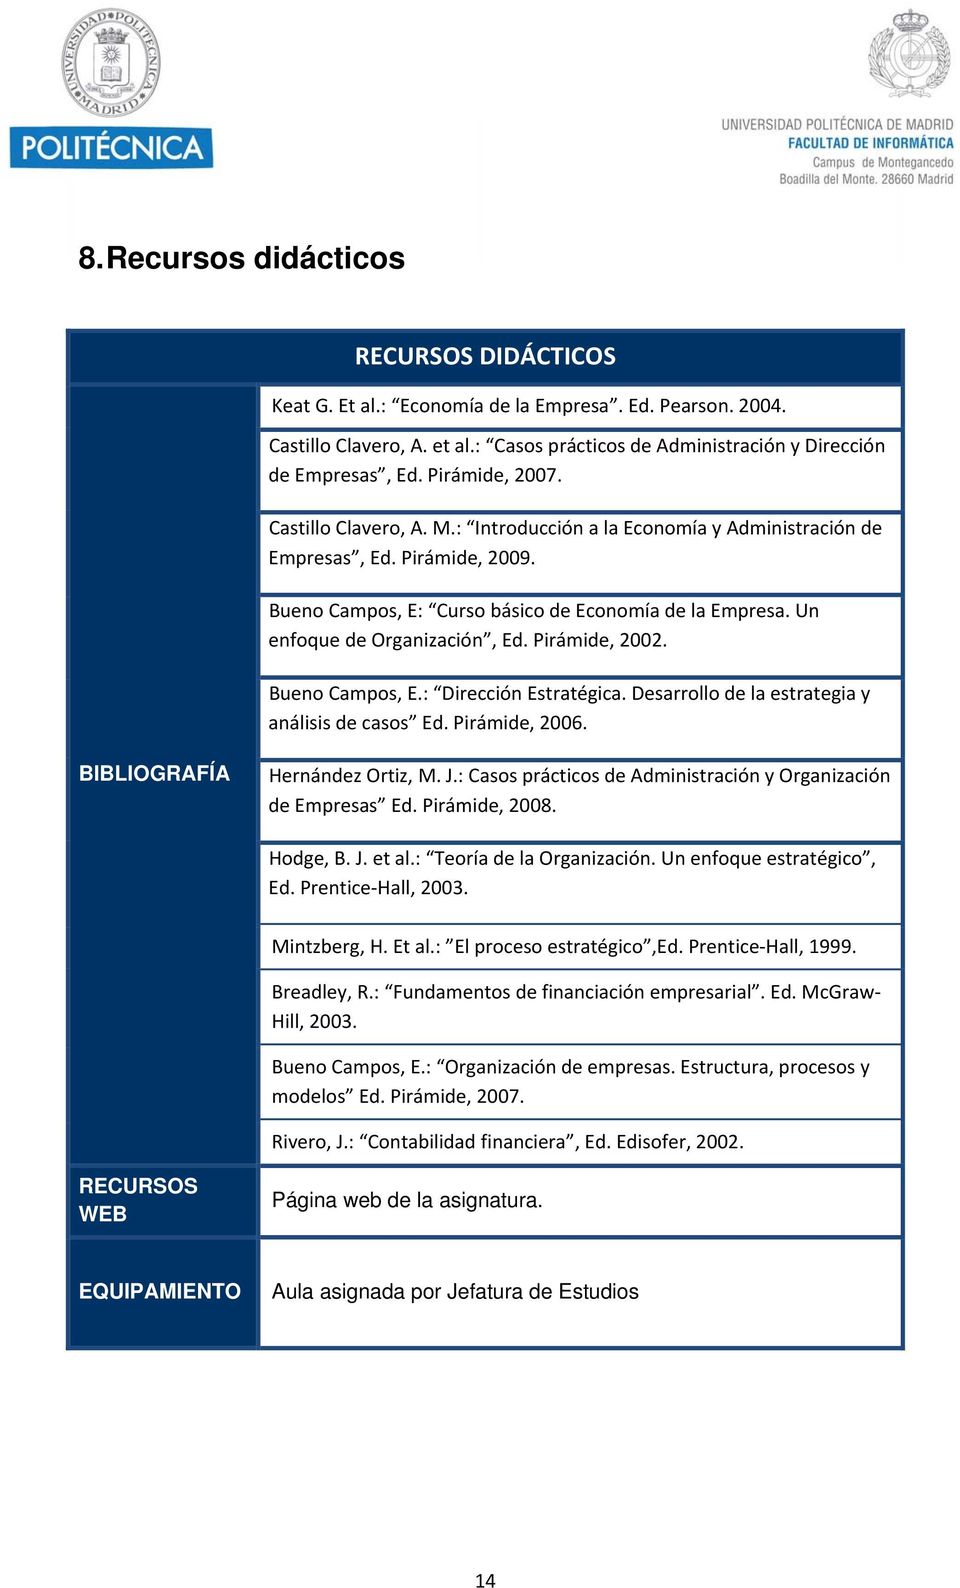 Un enfoque de Organización, Ed. Pirámide, 2002. Bueno Campos, E.: Dirección Estratégica. Desarrollo de la estrategia y análisis de casos Ed. Pirámide, 2006. BIBLIOGRAFÍA Hernández Ortiz, M. J.